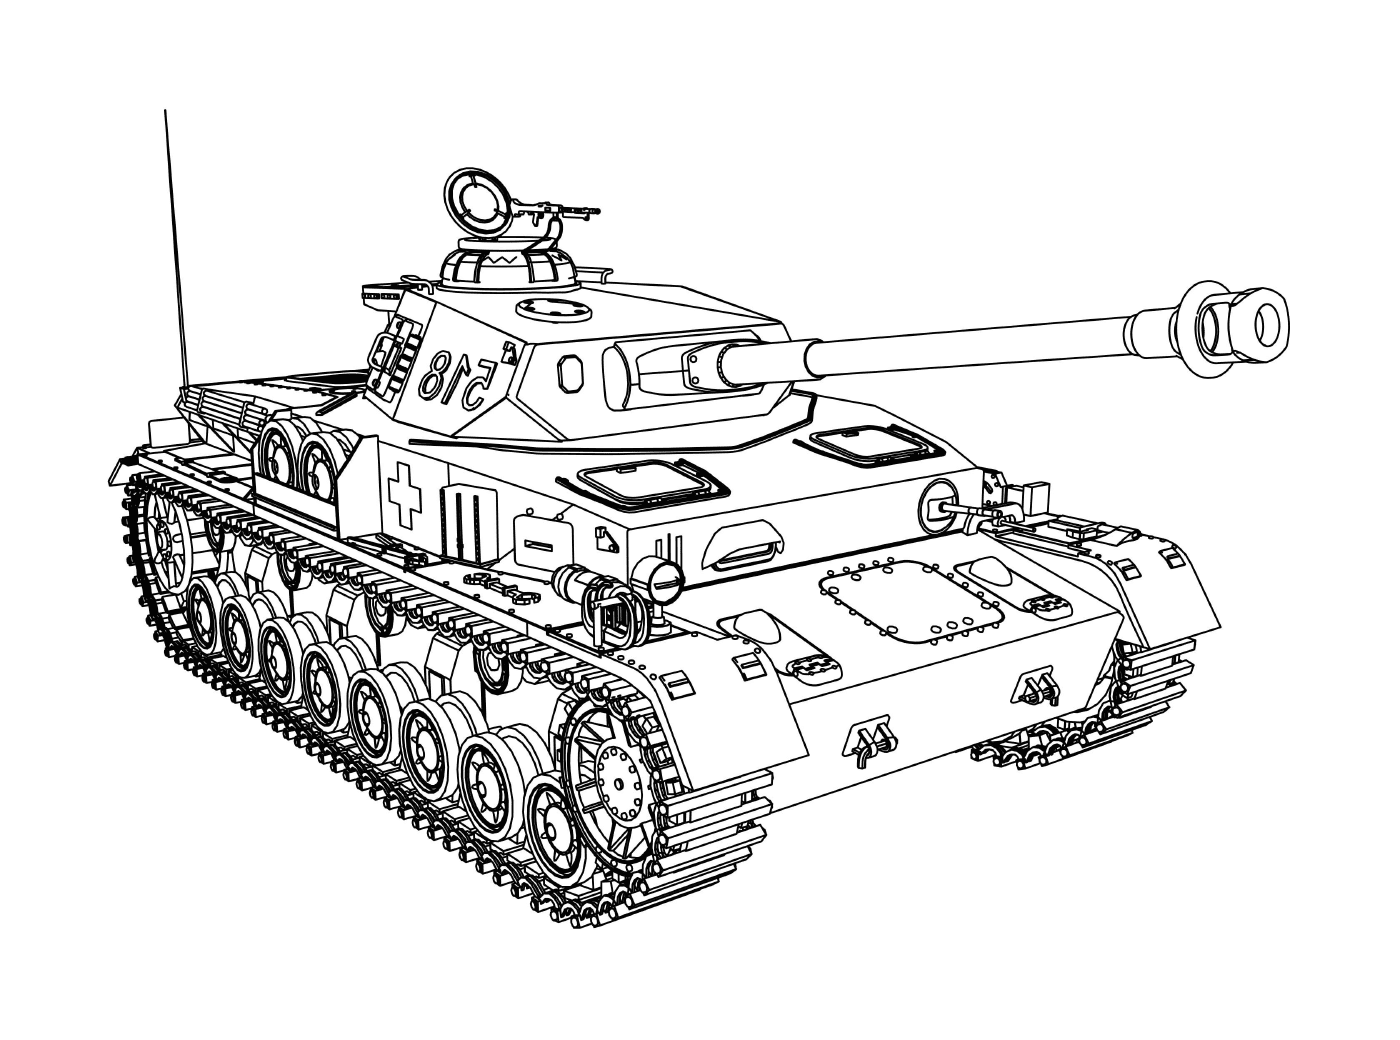   Tank Véhicule militaire : un vieux tank militaire 